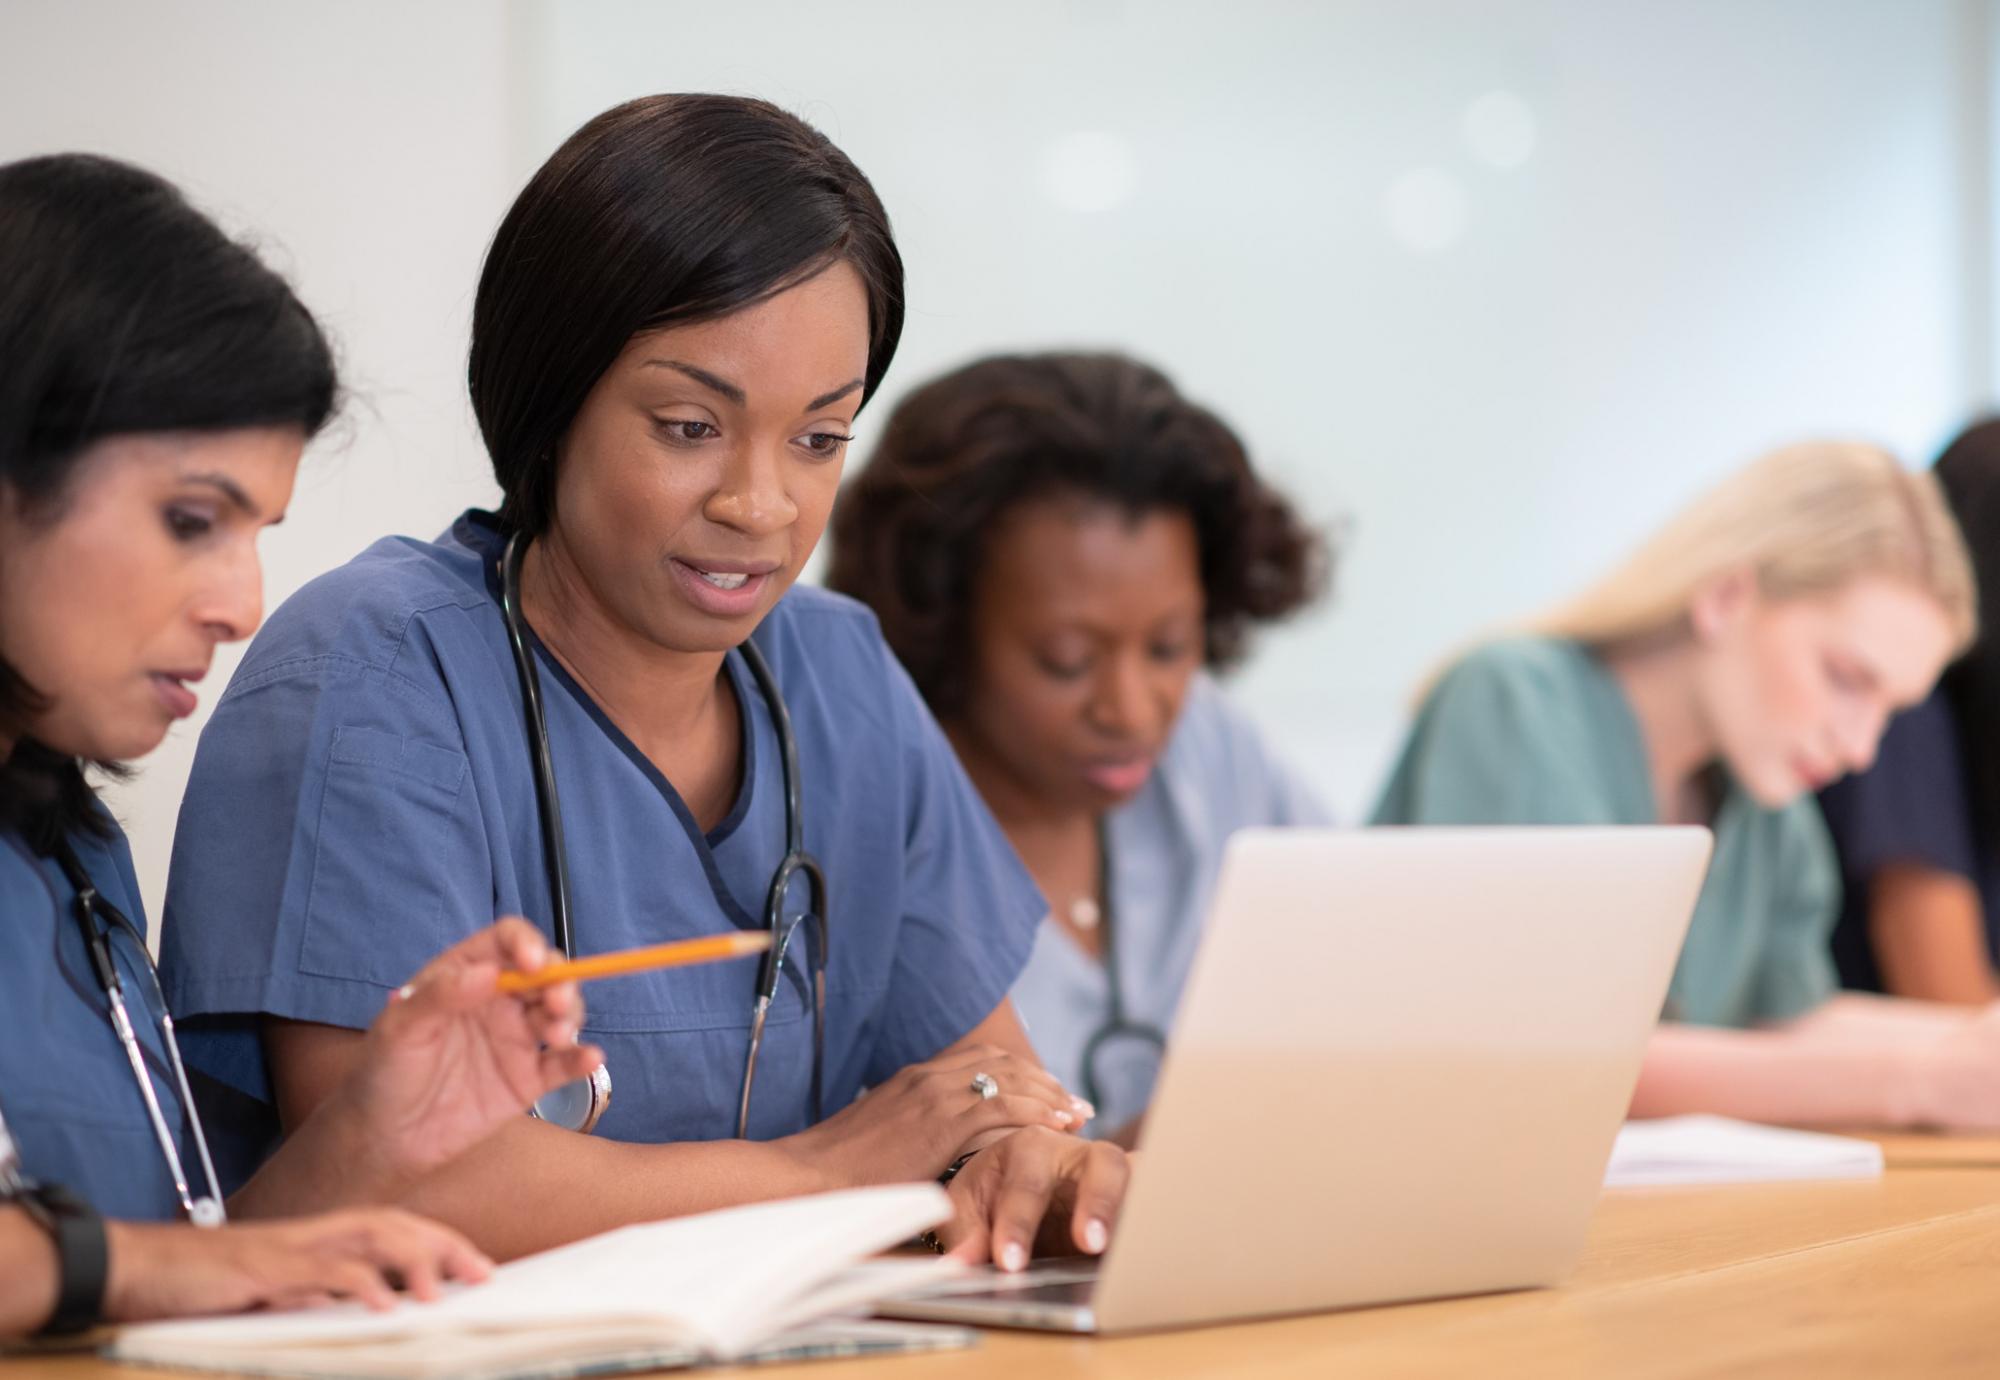 Female nurses studying at laptop